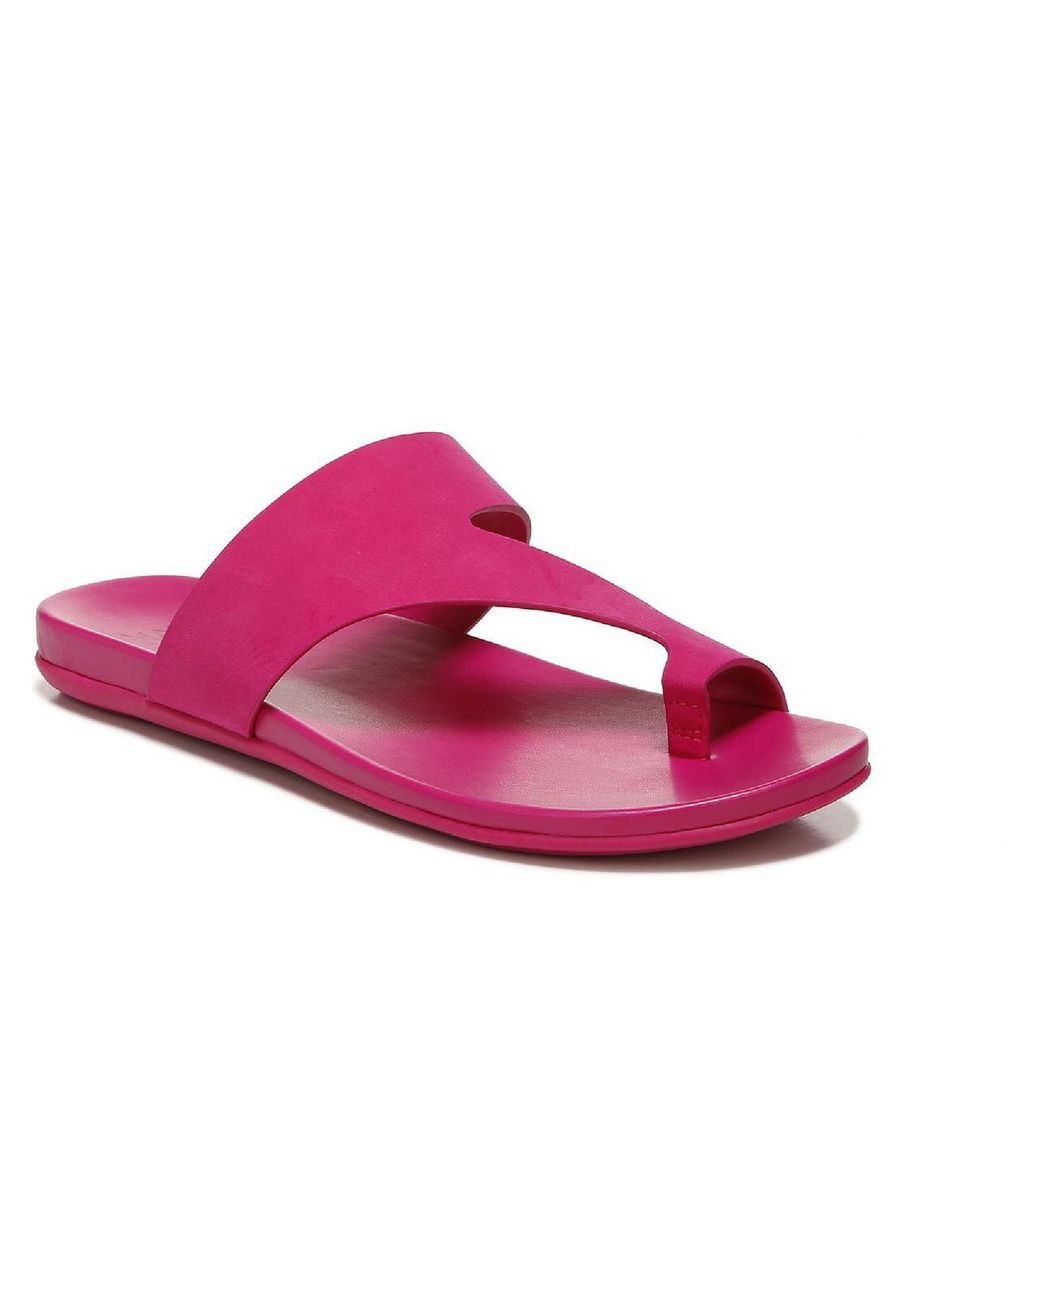 Naturalizer Genn-bolt Faux Leather Slip On Slide Sandals in Pink | Lyst